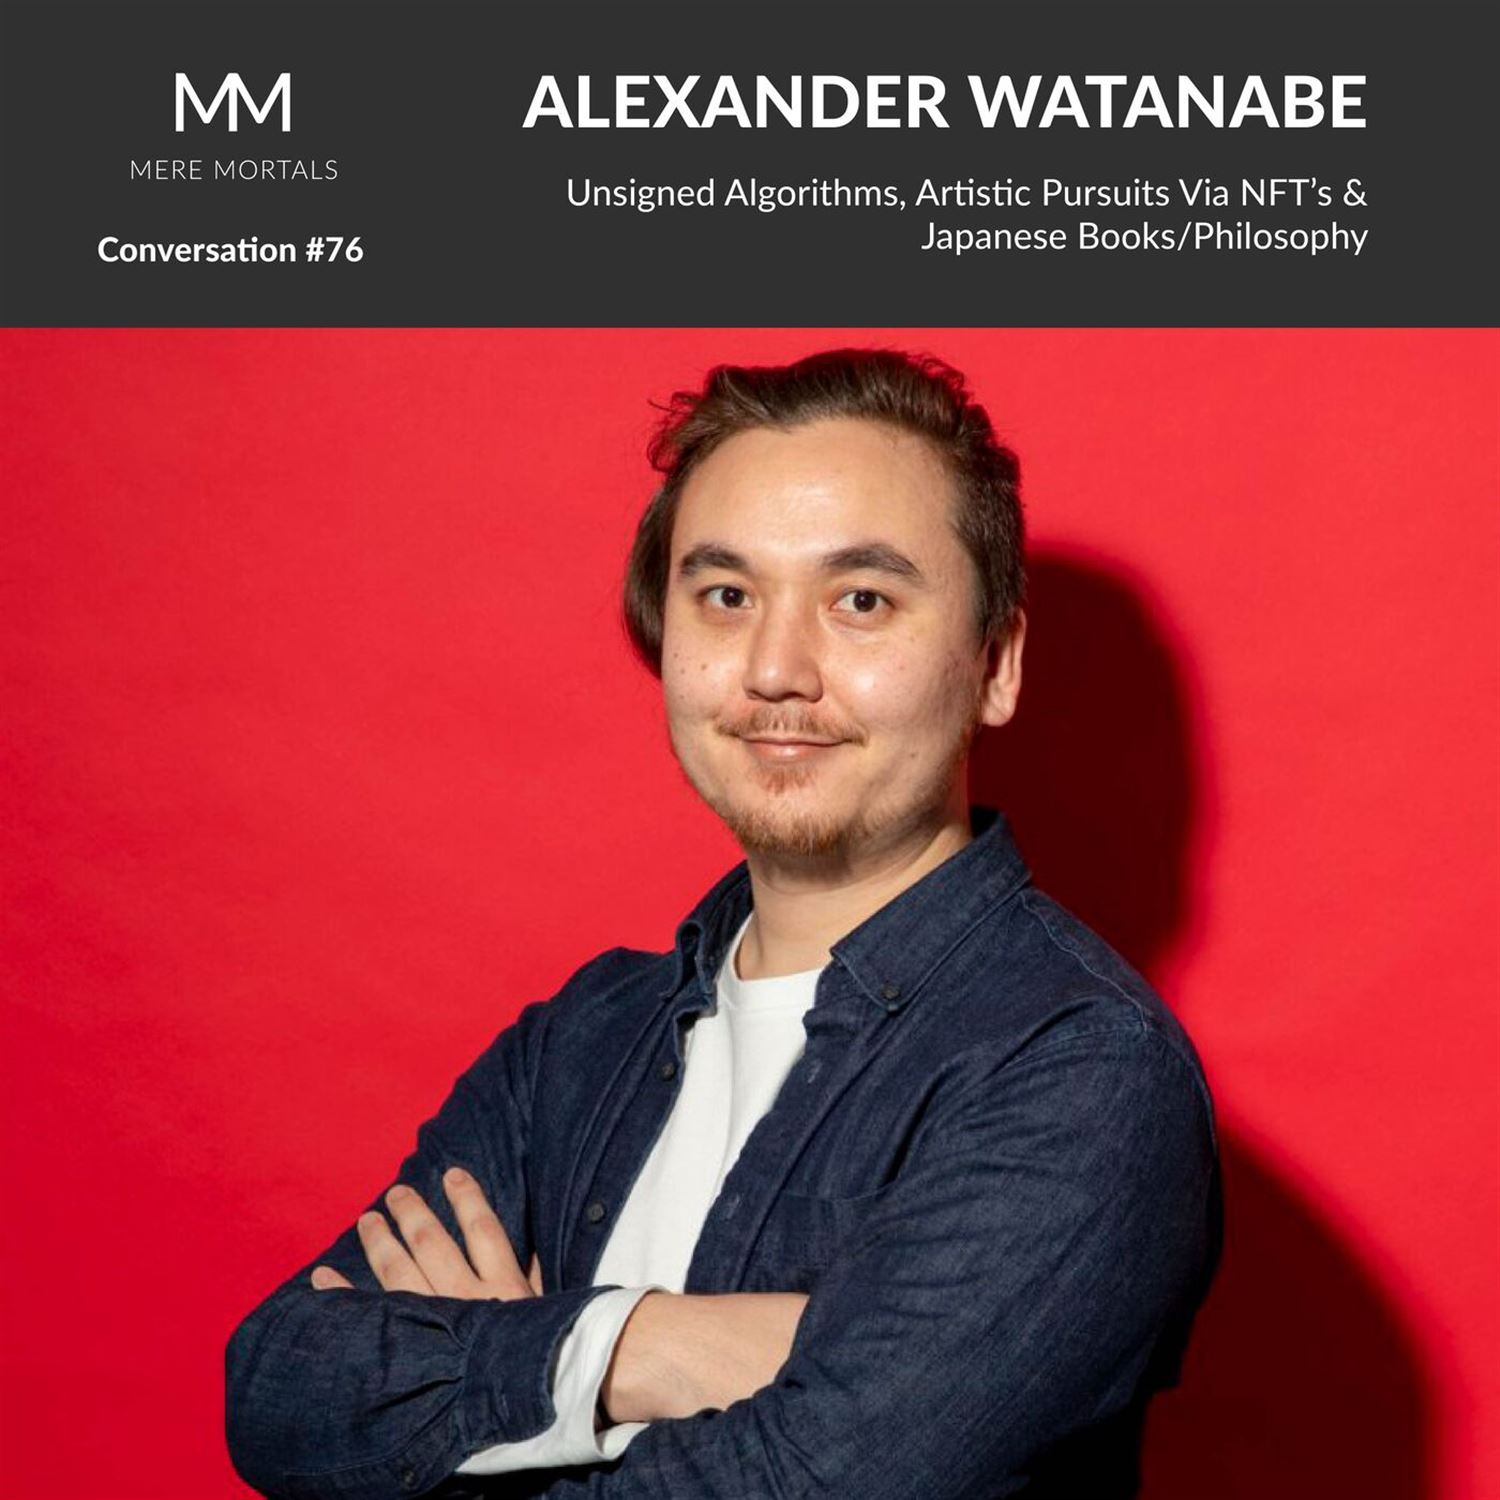 ALEXANDER WATANABE | Unsigned Algorithms, Artistic Pursuits Via NFT's & Japanese Books/Philosophy